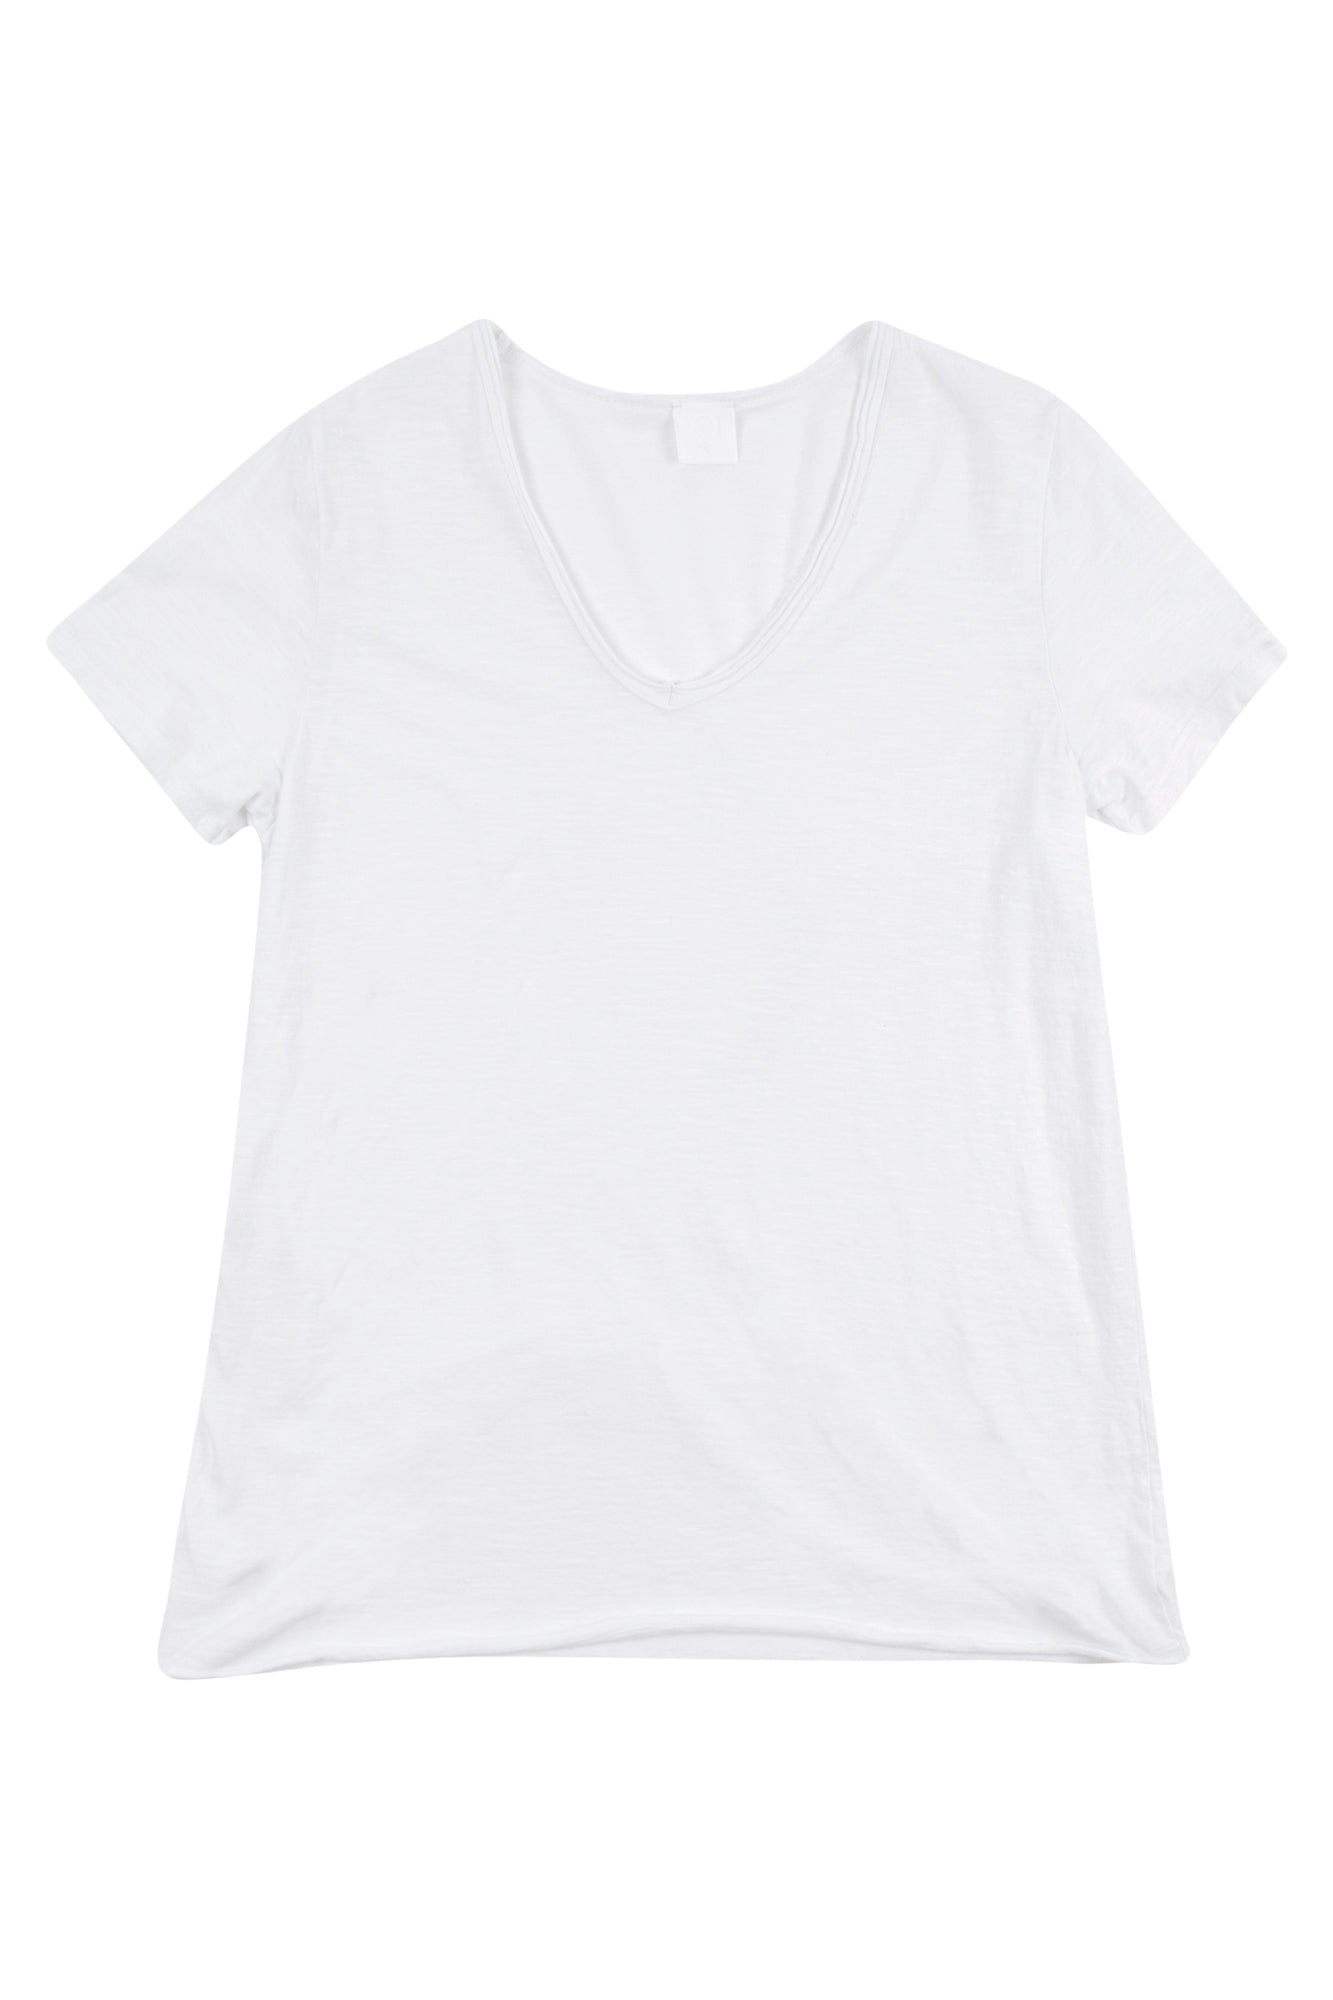 La Femme Blanche - T-shirt - 431519 - Bianco